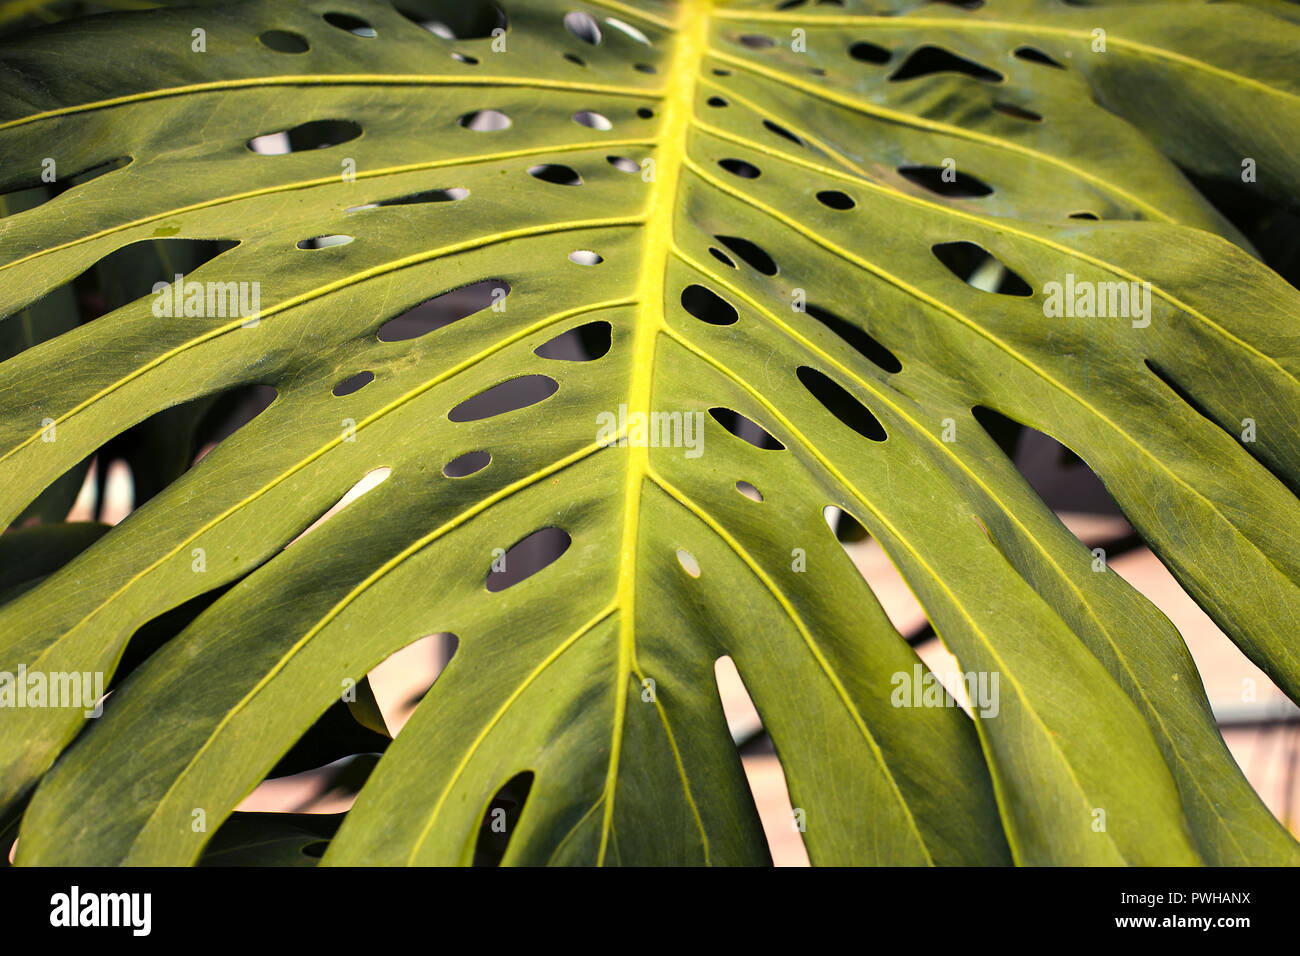 Textured sullo sfondo di una pianta verde pieno di fori. Monstera deliciosa Foto Stock